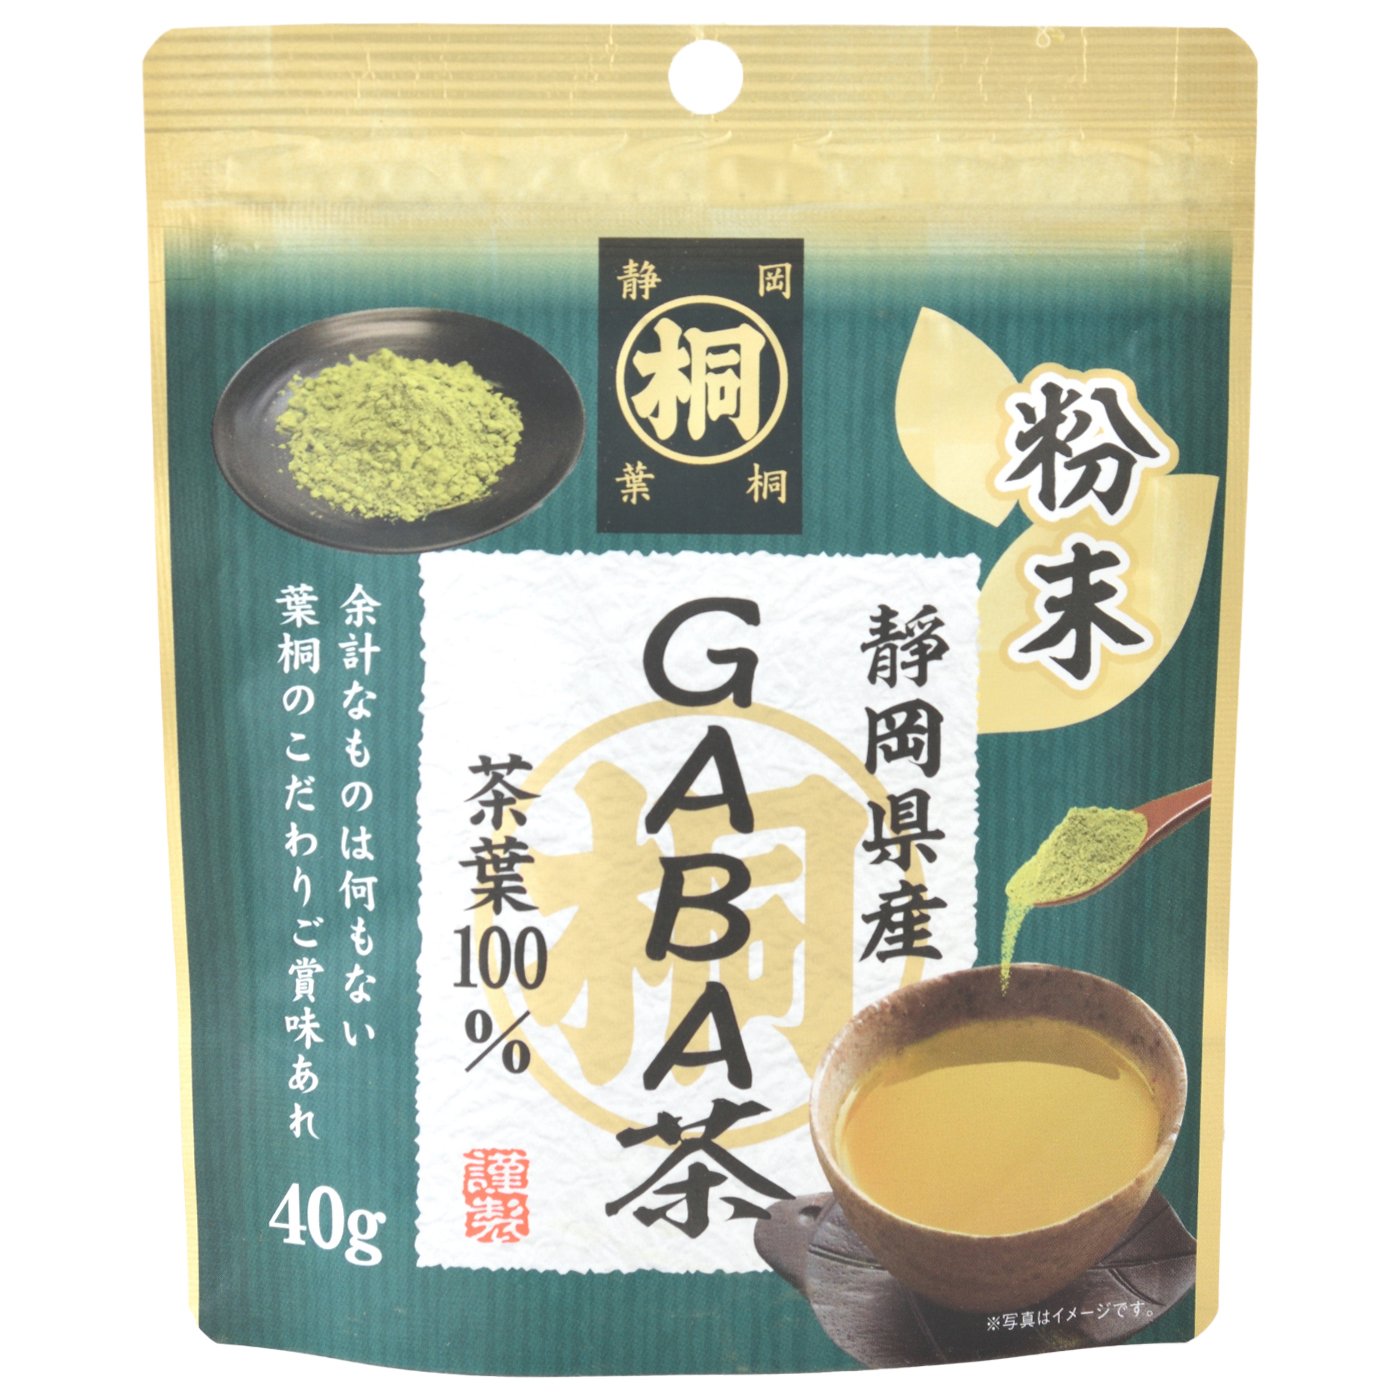 静岡産マル桐粉末GABA茶